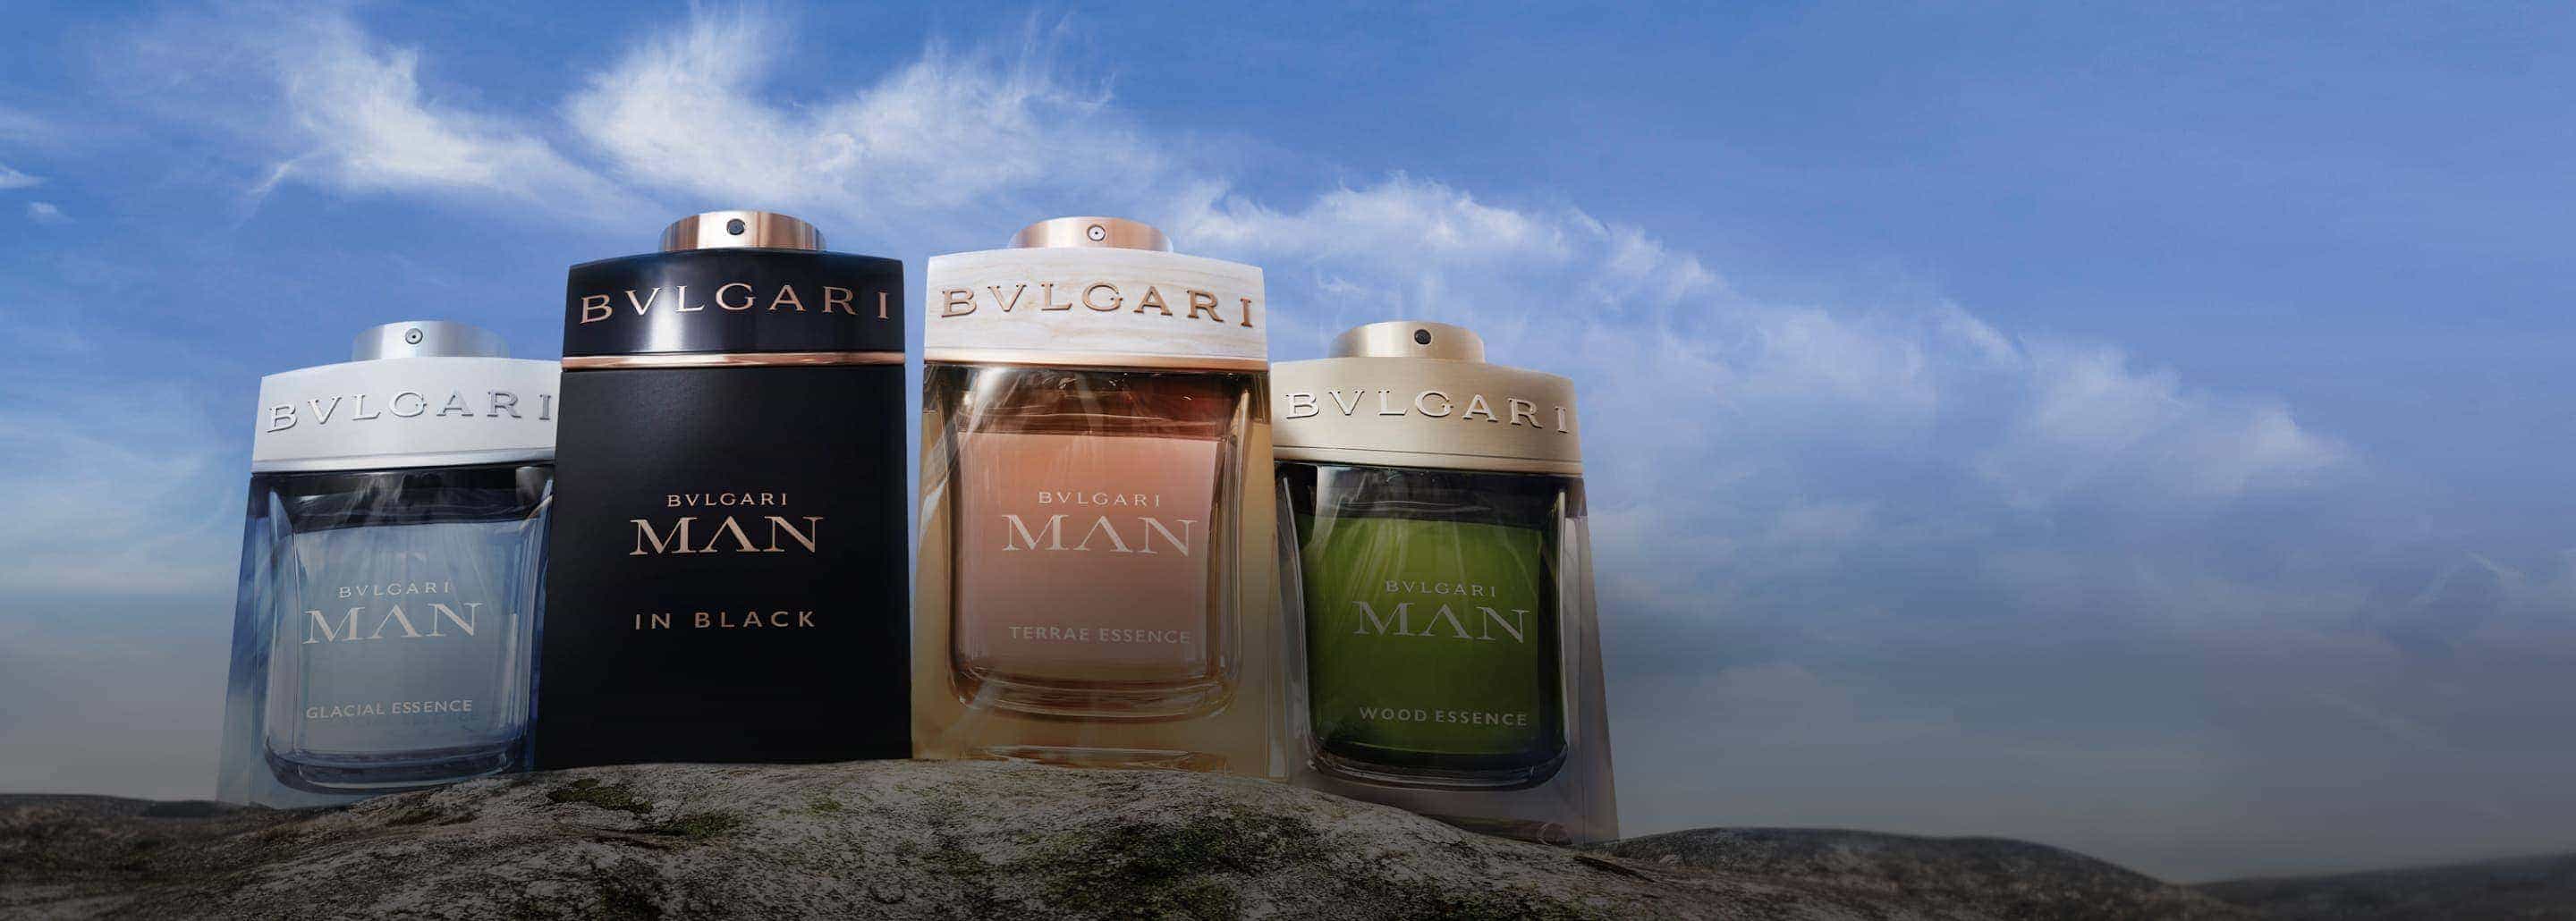 Imagen de cuatro frascos de perfume de la marca BVLGARI de distintas presentaciones para hombre, colocados en ilera sobre una piedra, BVLGARI